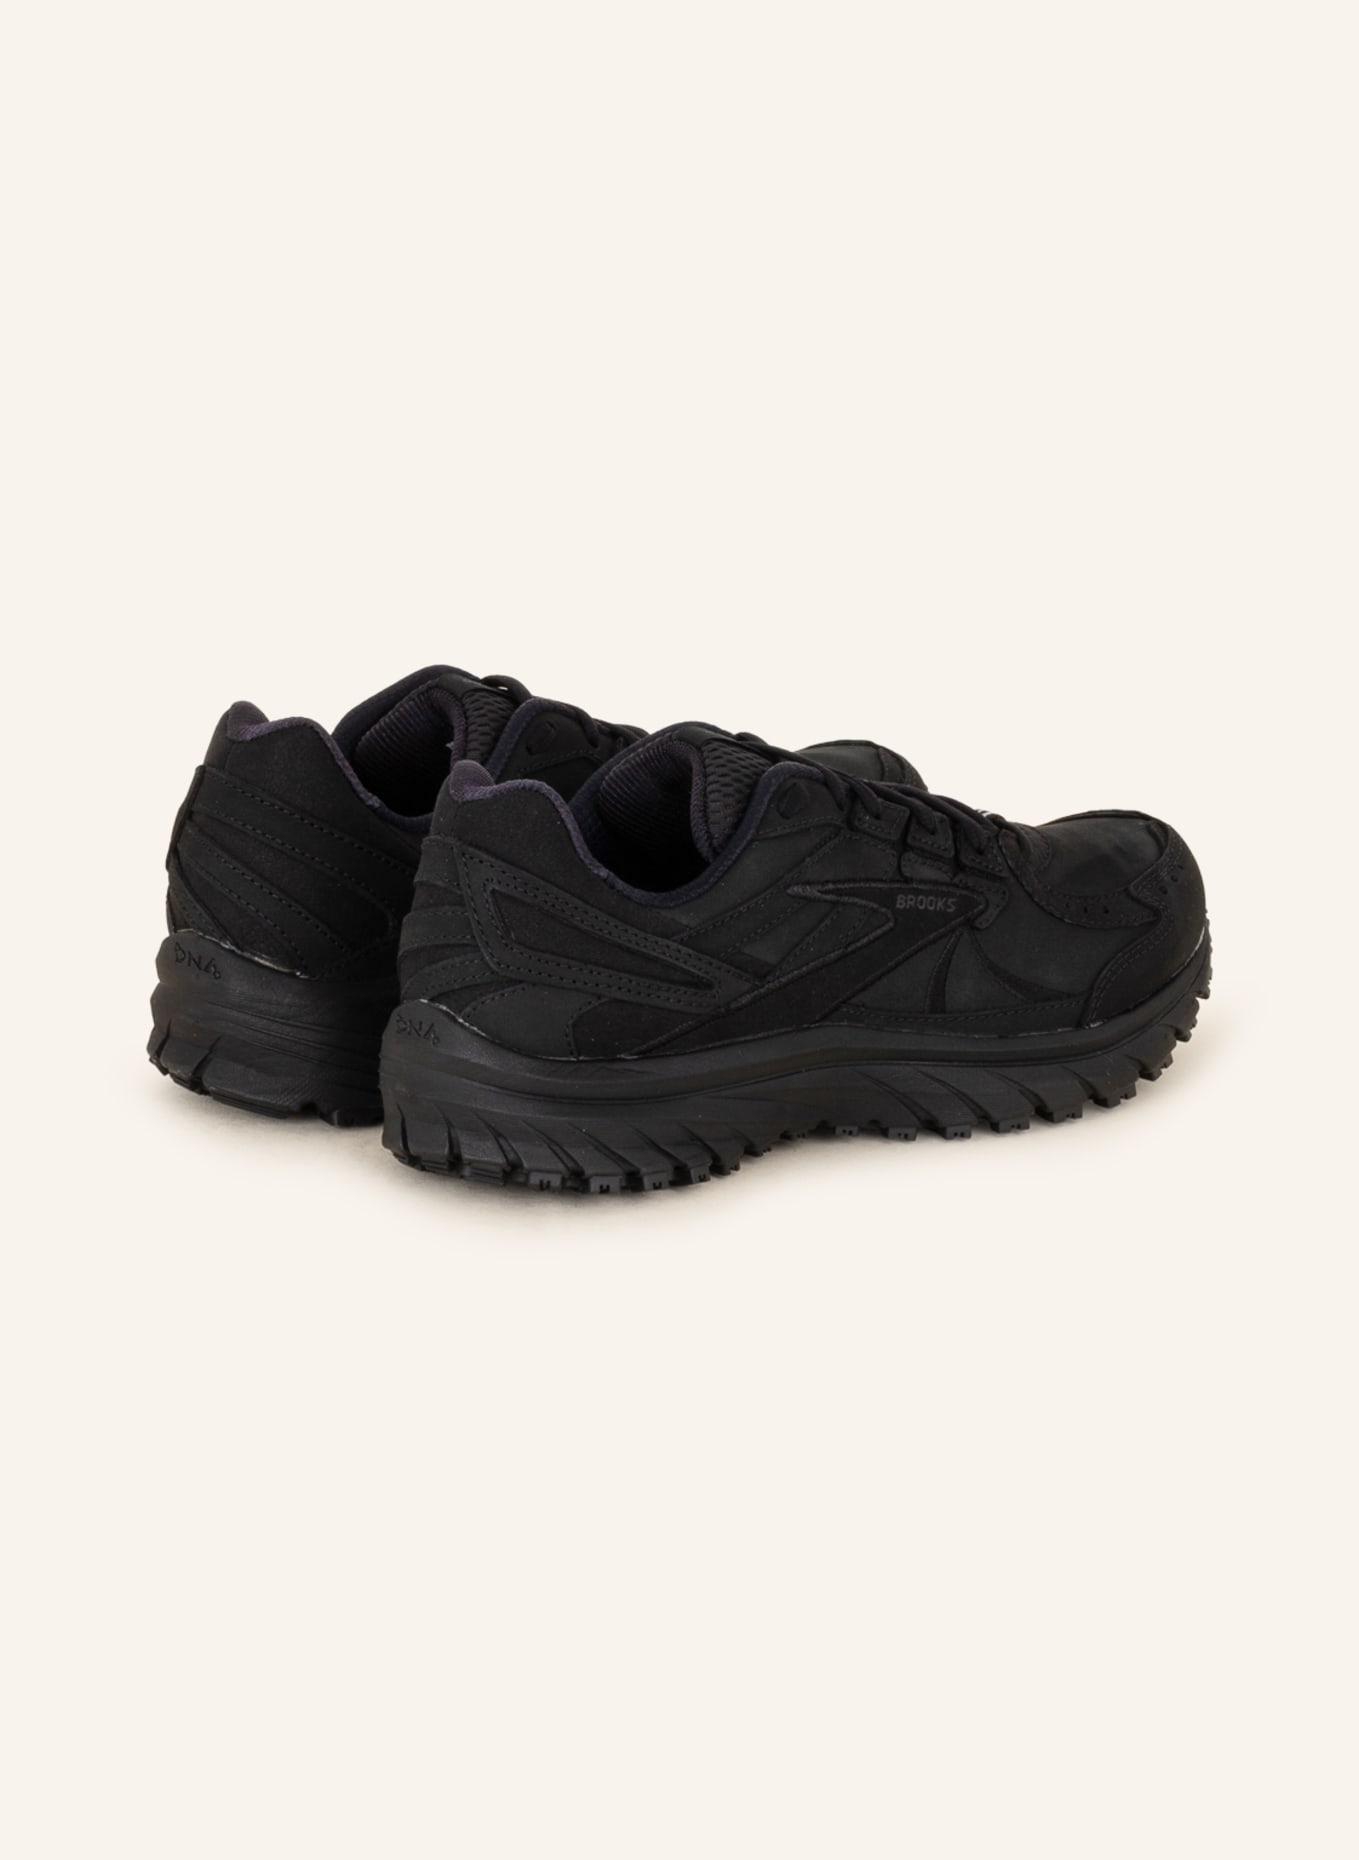 BROOKS Running shoes ZEAL WALKER, Color: BLACK (Image 2)